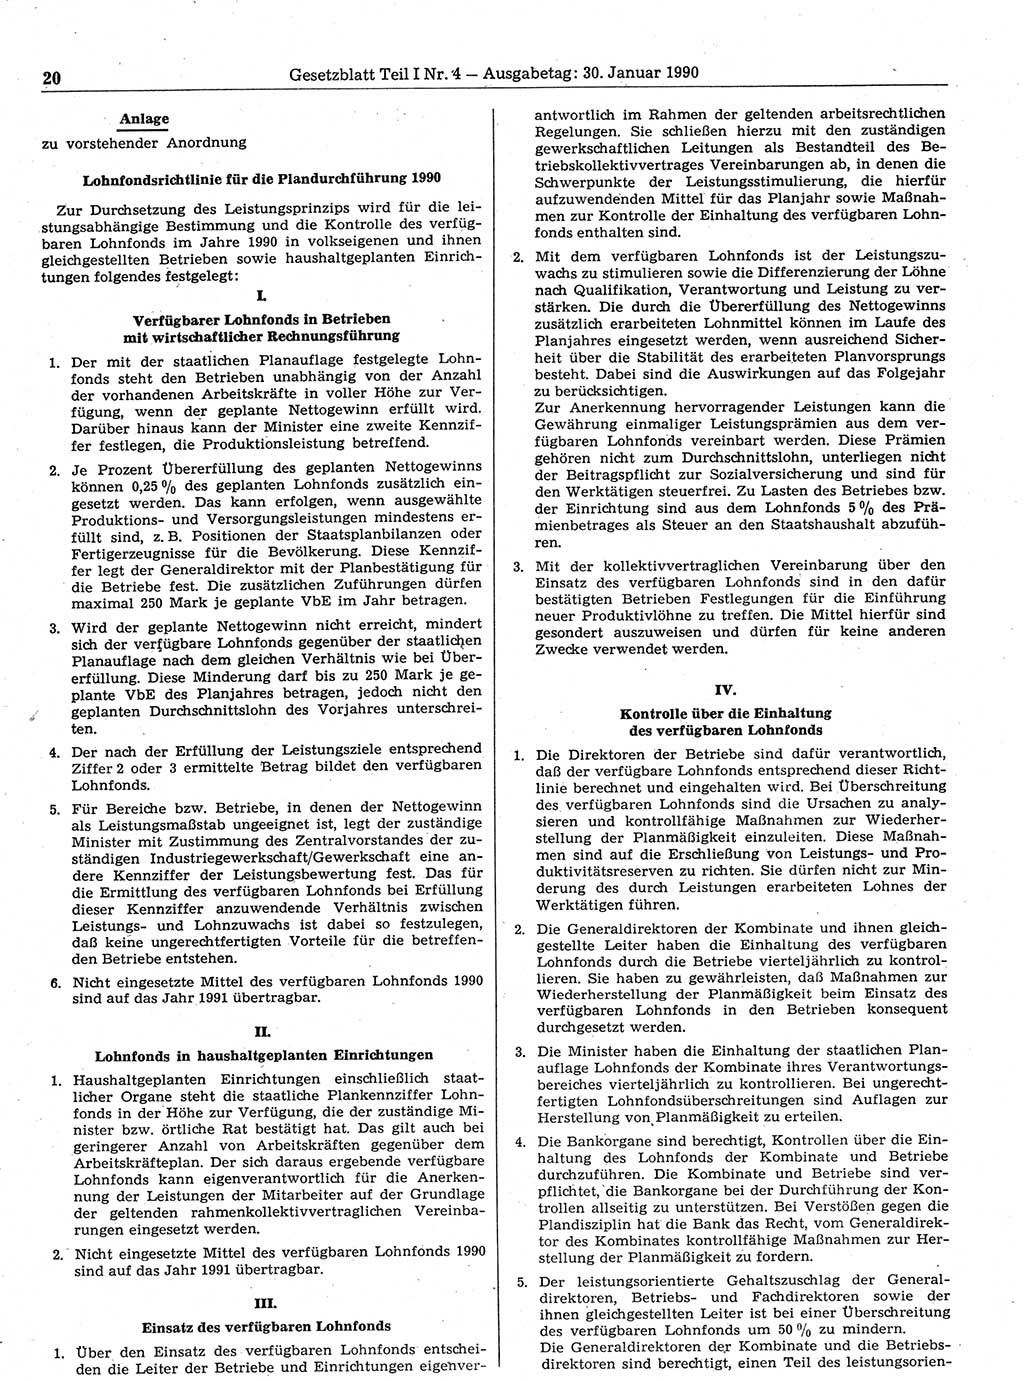 Gesetzblatt (GBl.) der Deutschen Demokratischen Republik (DDR) Teil Ⅰ 1990, Seite 20 (GBl. DDR Ⅰ 1990, S. 20)